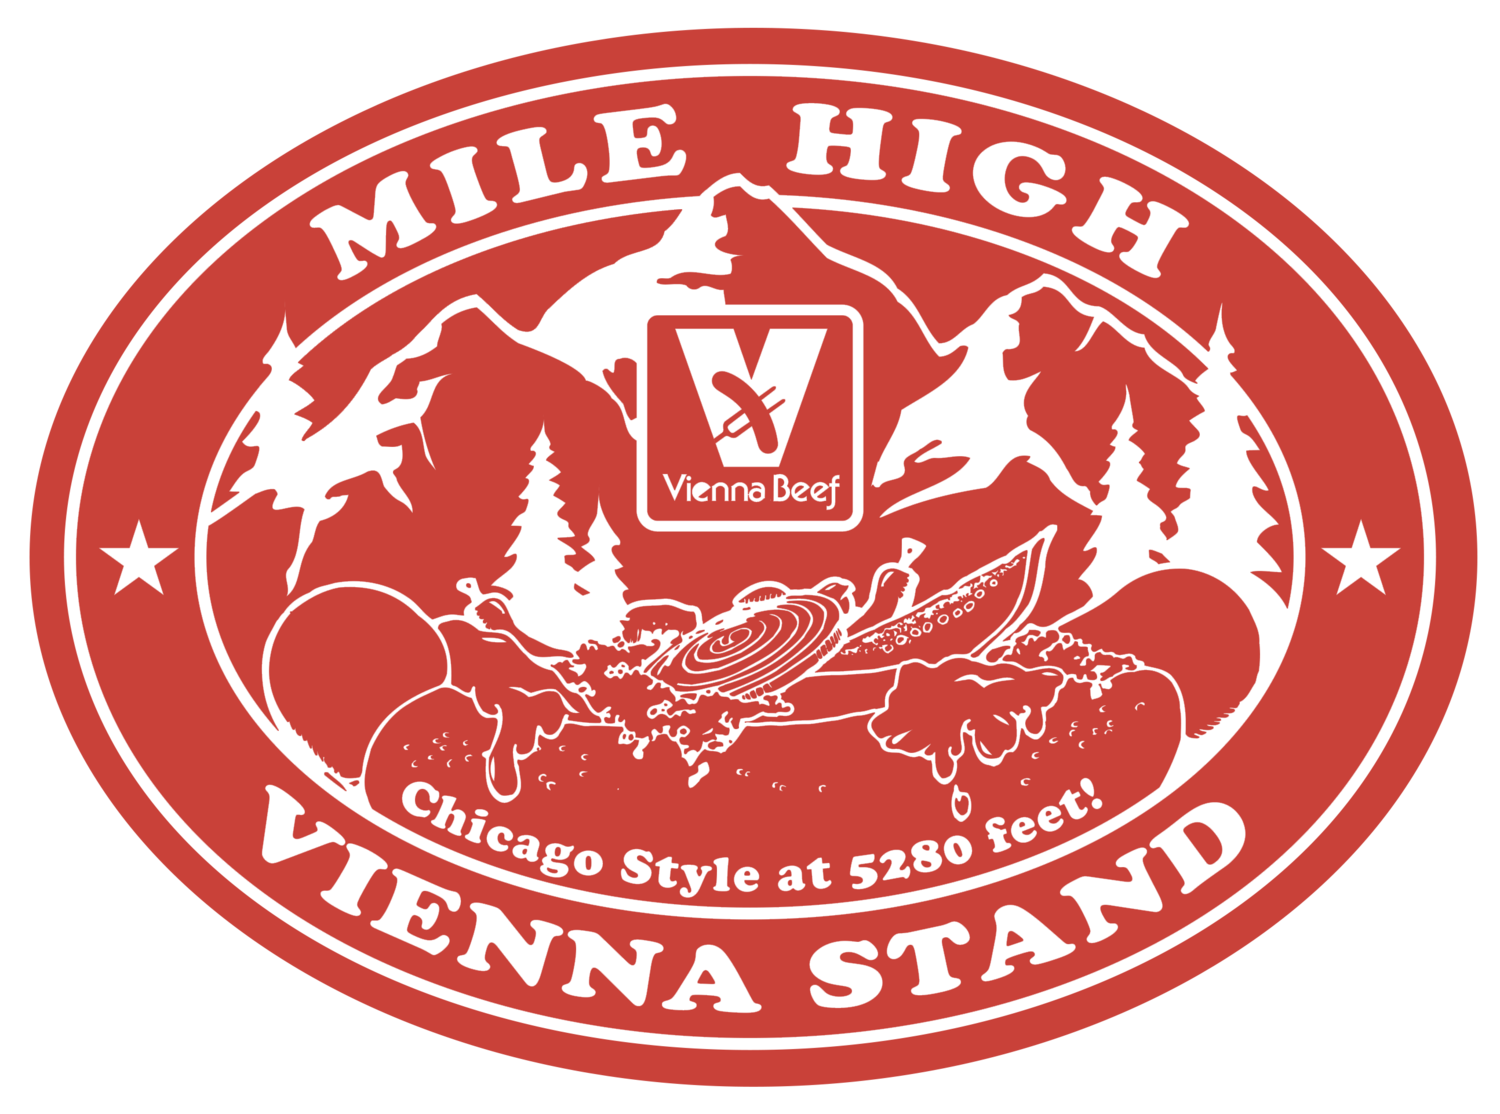 Mile High Vienna Stand